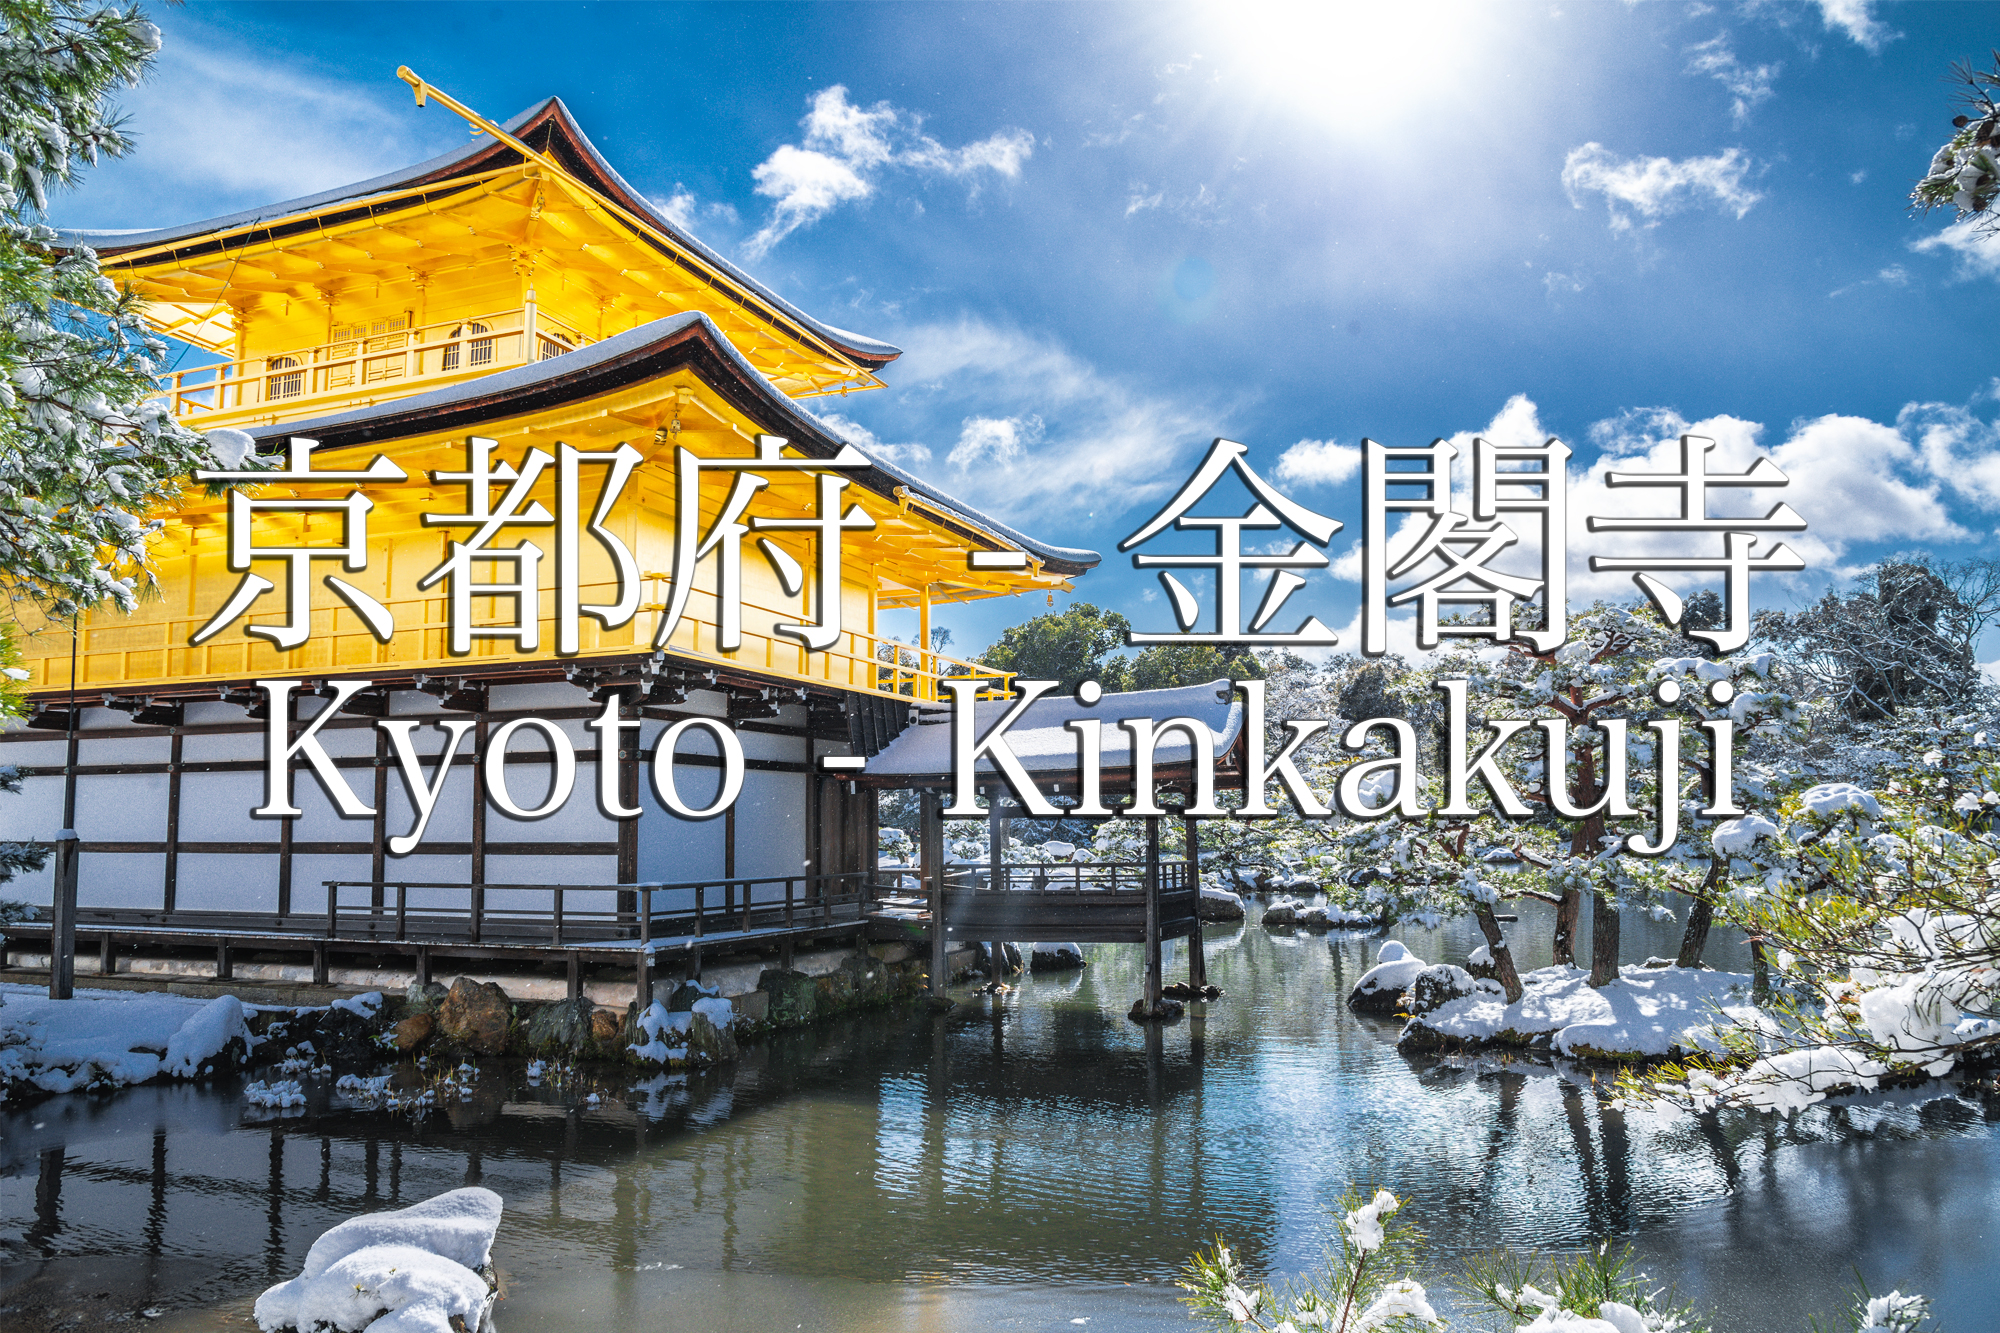 京都 金閣寺 京都の冬 雪景色の庭園が美しいおすすめの写真撮影スポット 撮影した写真の紹介 アクセス情報や交通手段など 写真や映像で紹介する関西 近畿の絶景カメラ 観光スポット